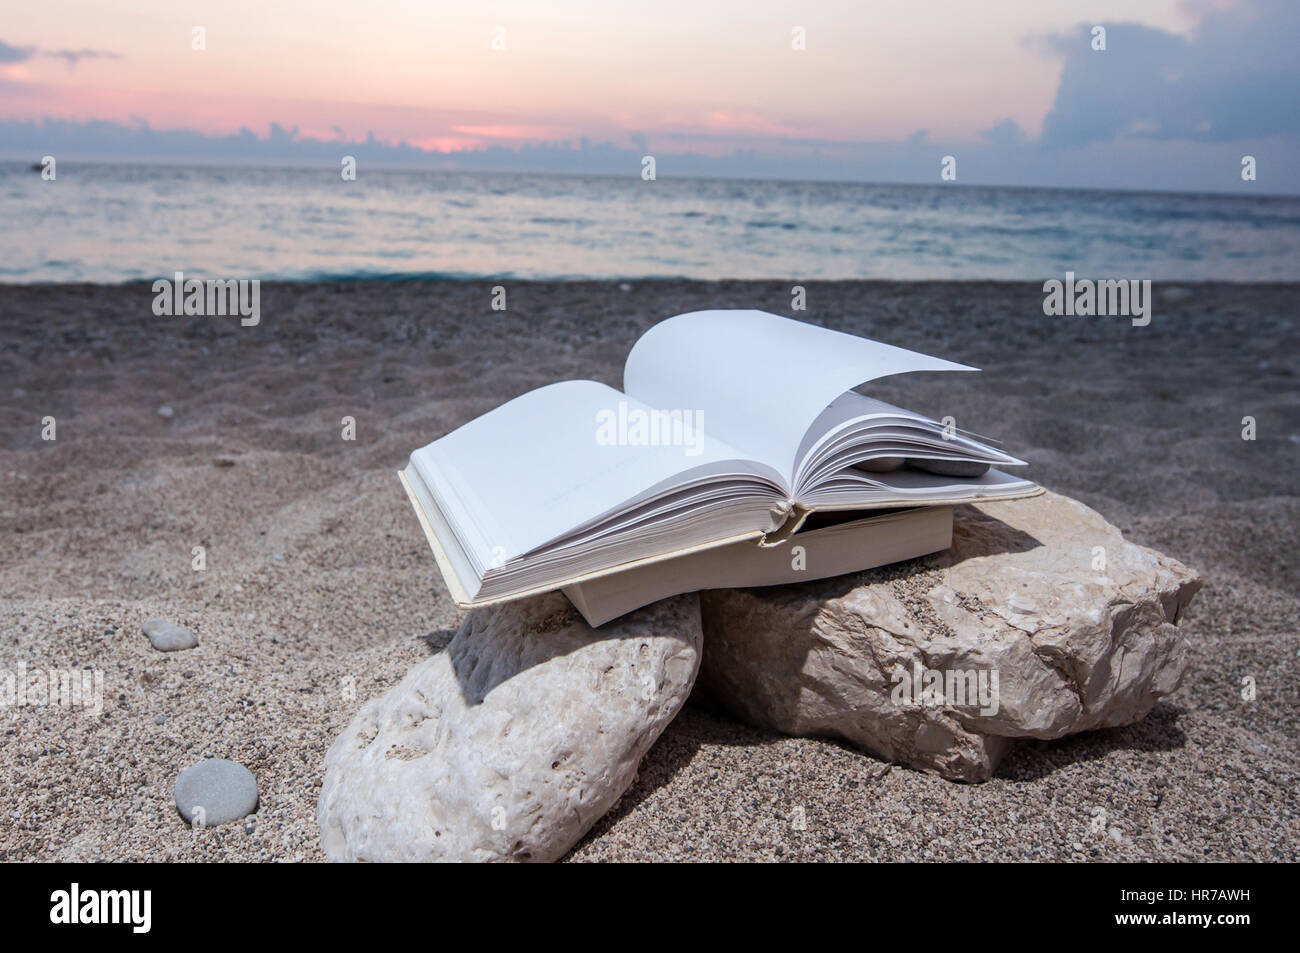 Plage à livre ouvert sur une pile de livres près de la mer en été, coucher du soleil Banque D'Images